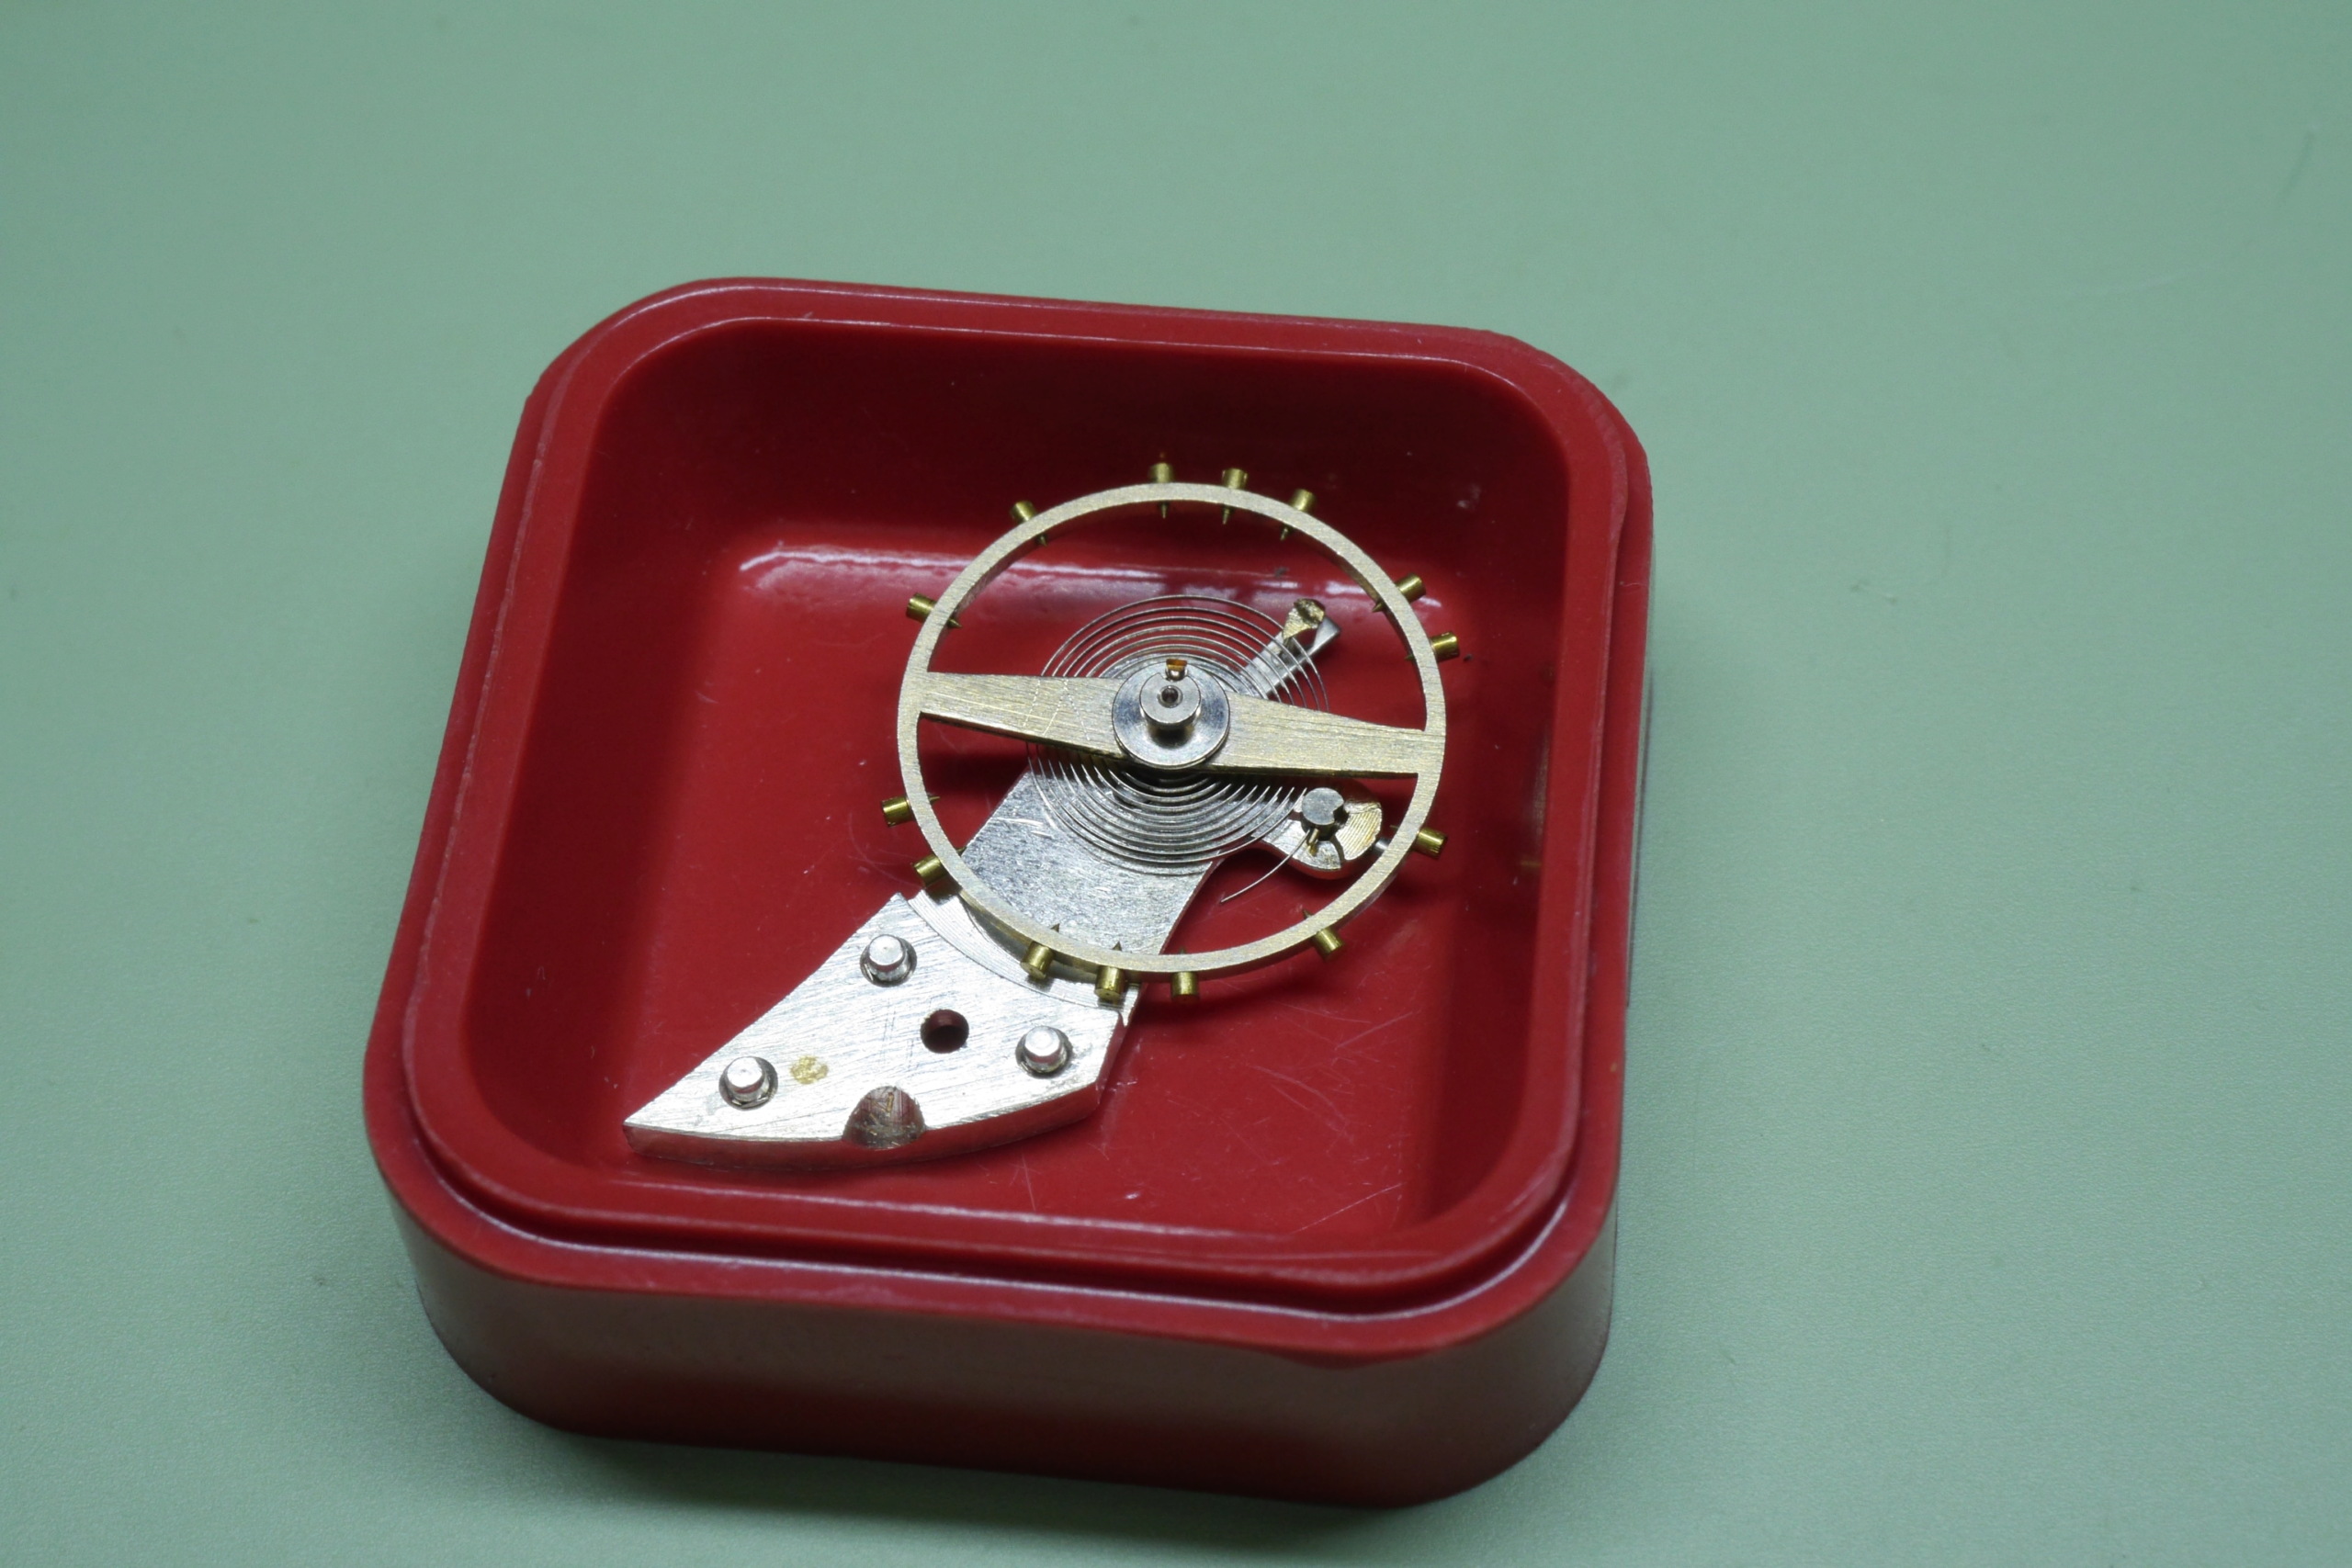 longines - Réparation et entretien d'une montre de poche S.F.L (société française longines) 7910